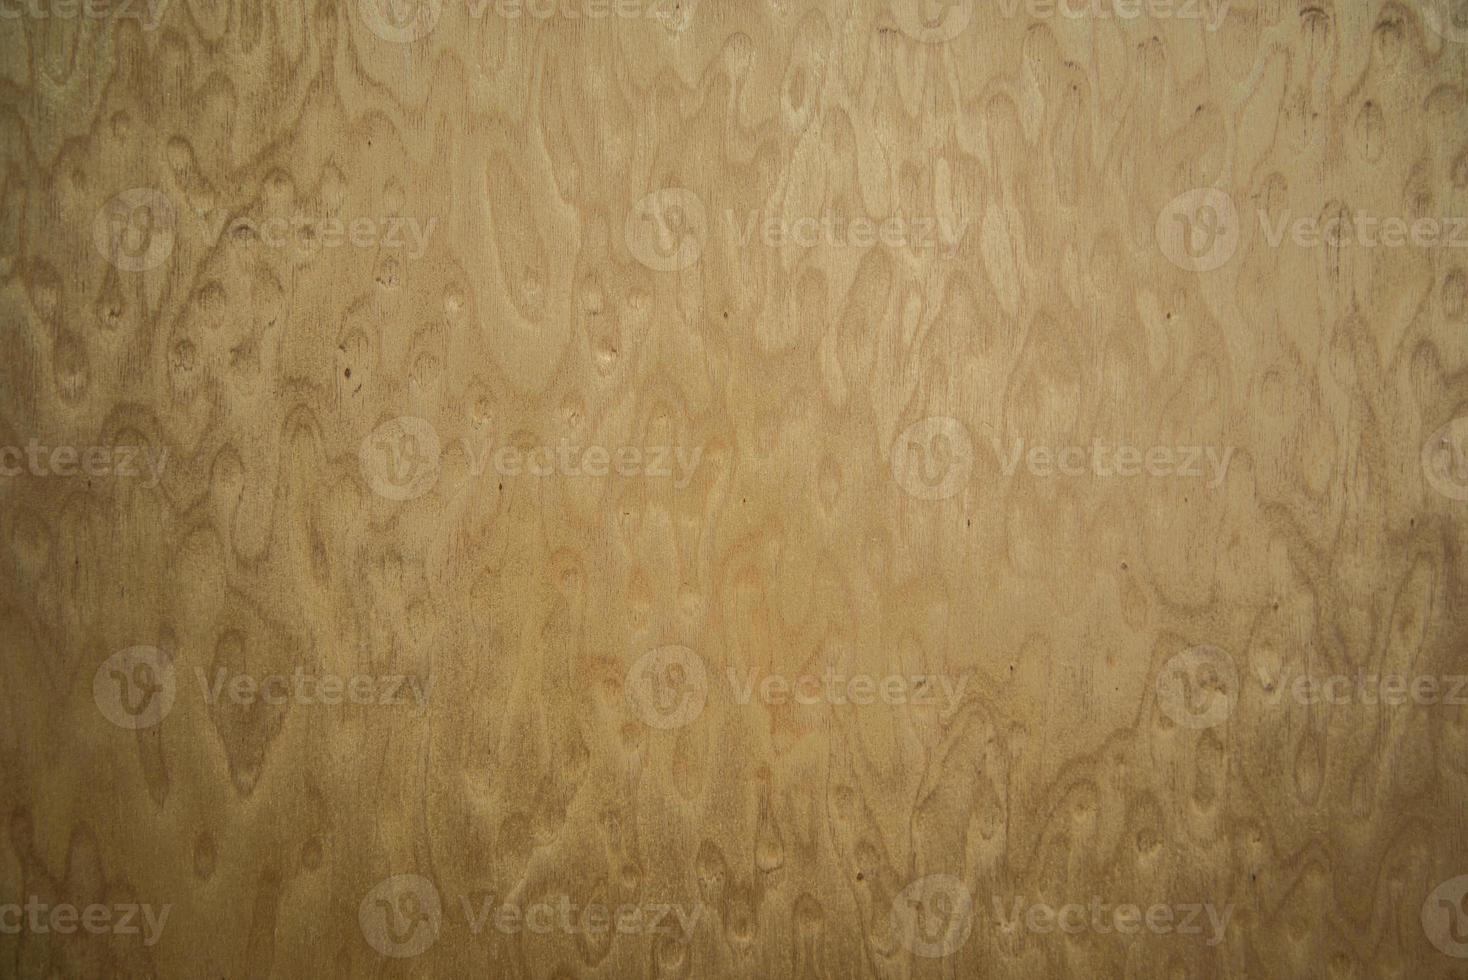 hout textuur foto